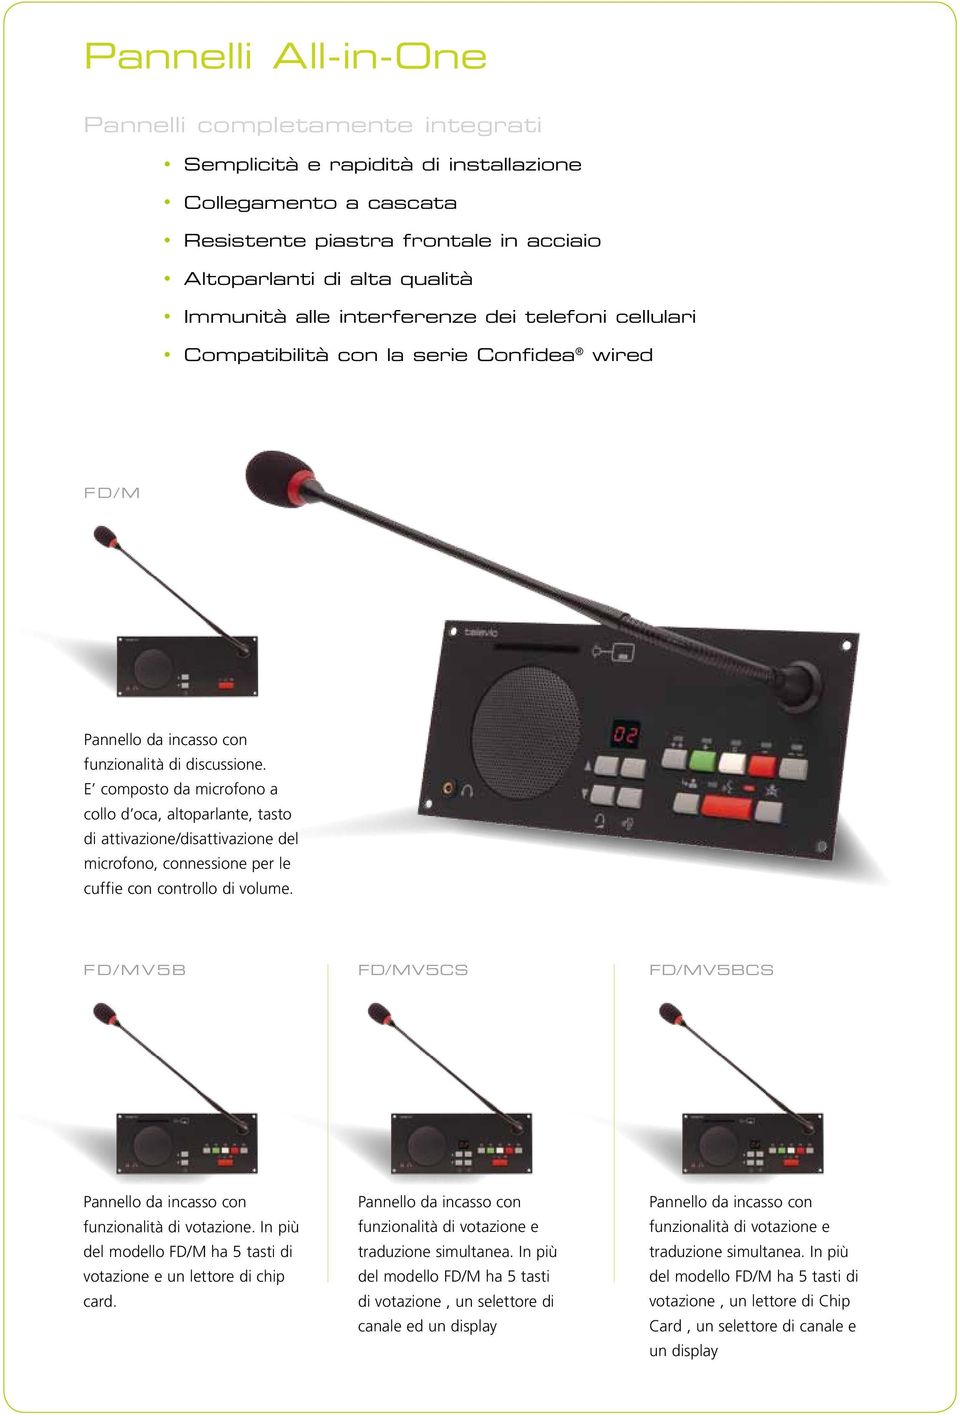 E composto da microfono a collo d oca, altoparlante, tasto di attivazione/disattivazione del microfono, connessione per le cuffie con controllo di volume.